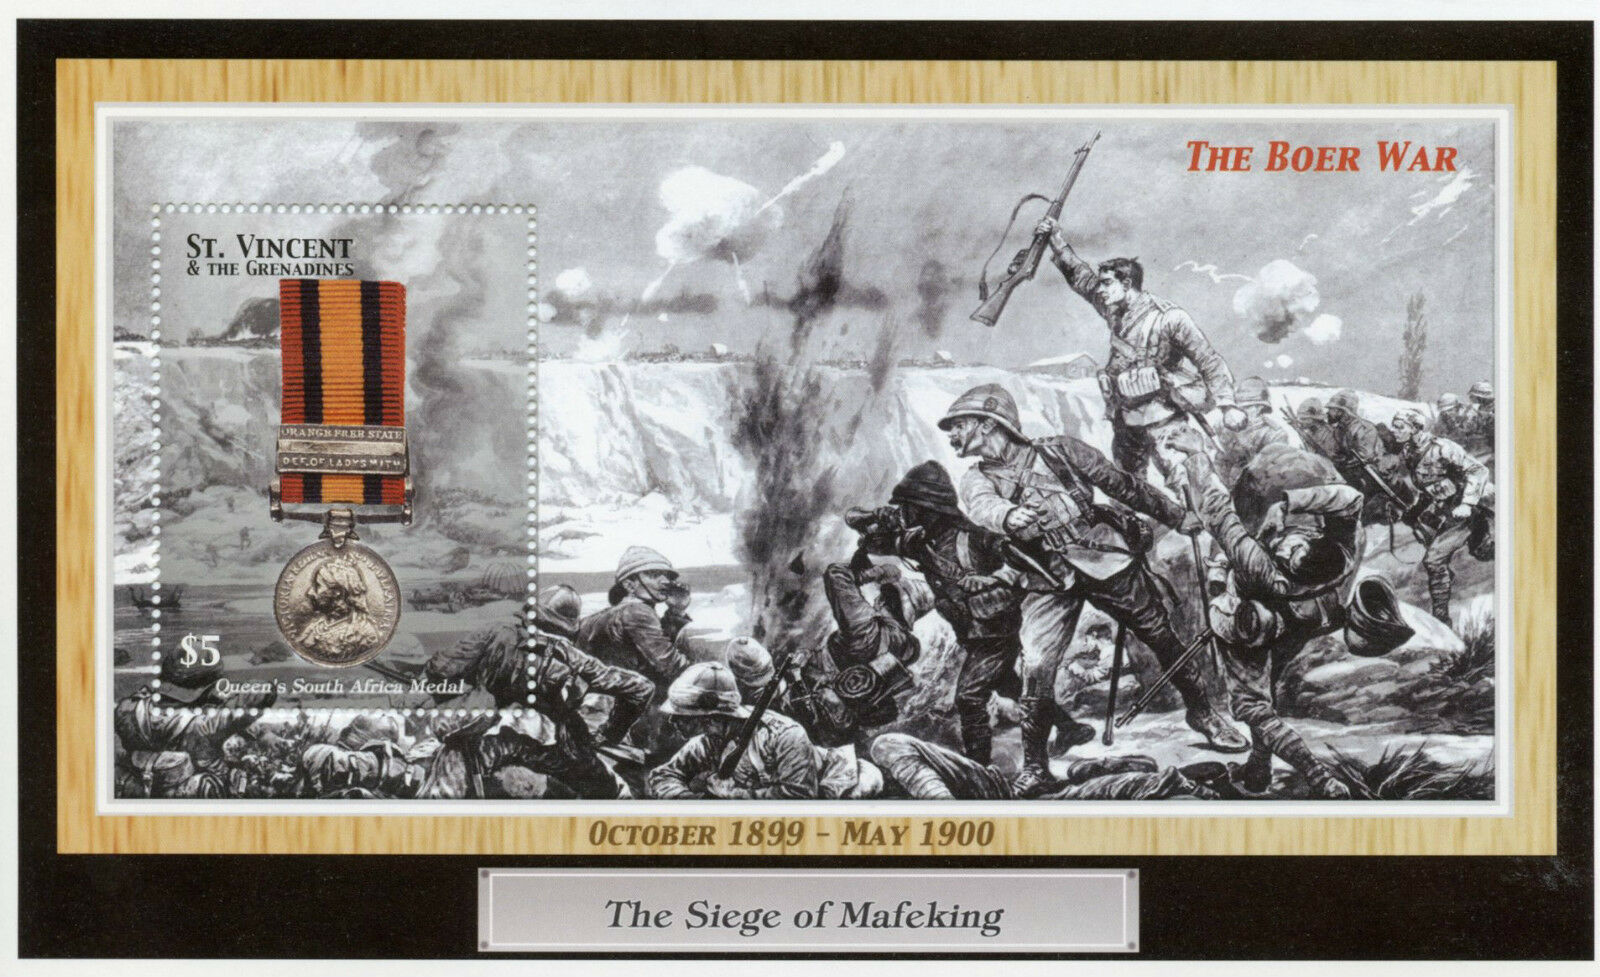 St Vincent & Grenadines 2002 MNH Military Stamps Queens Sth Africa Medal Boer War 1v S/S